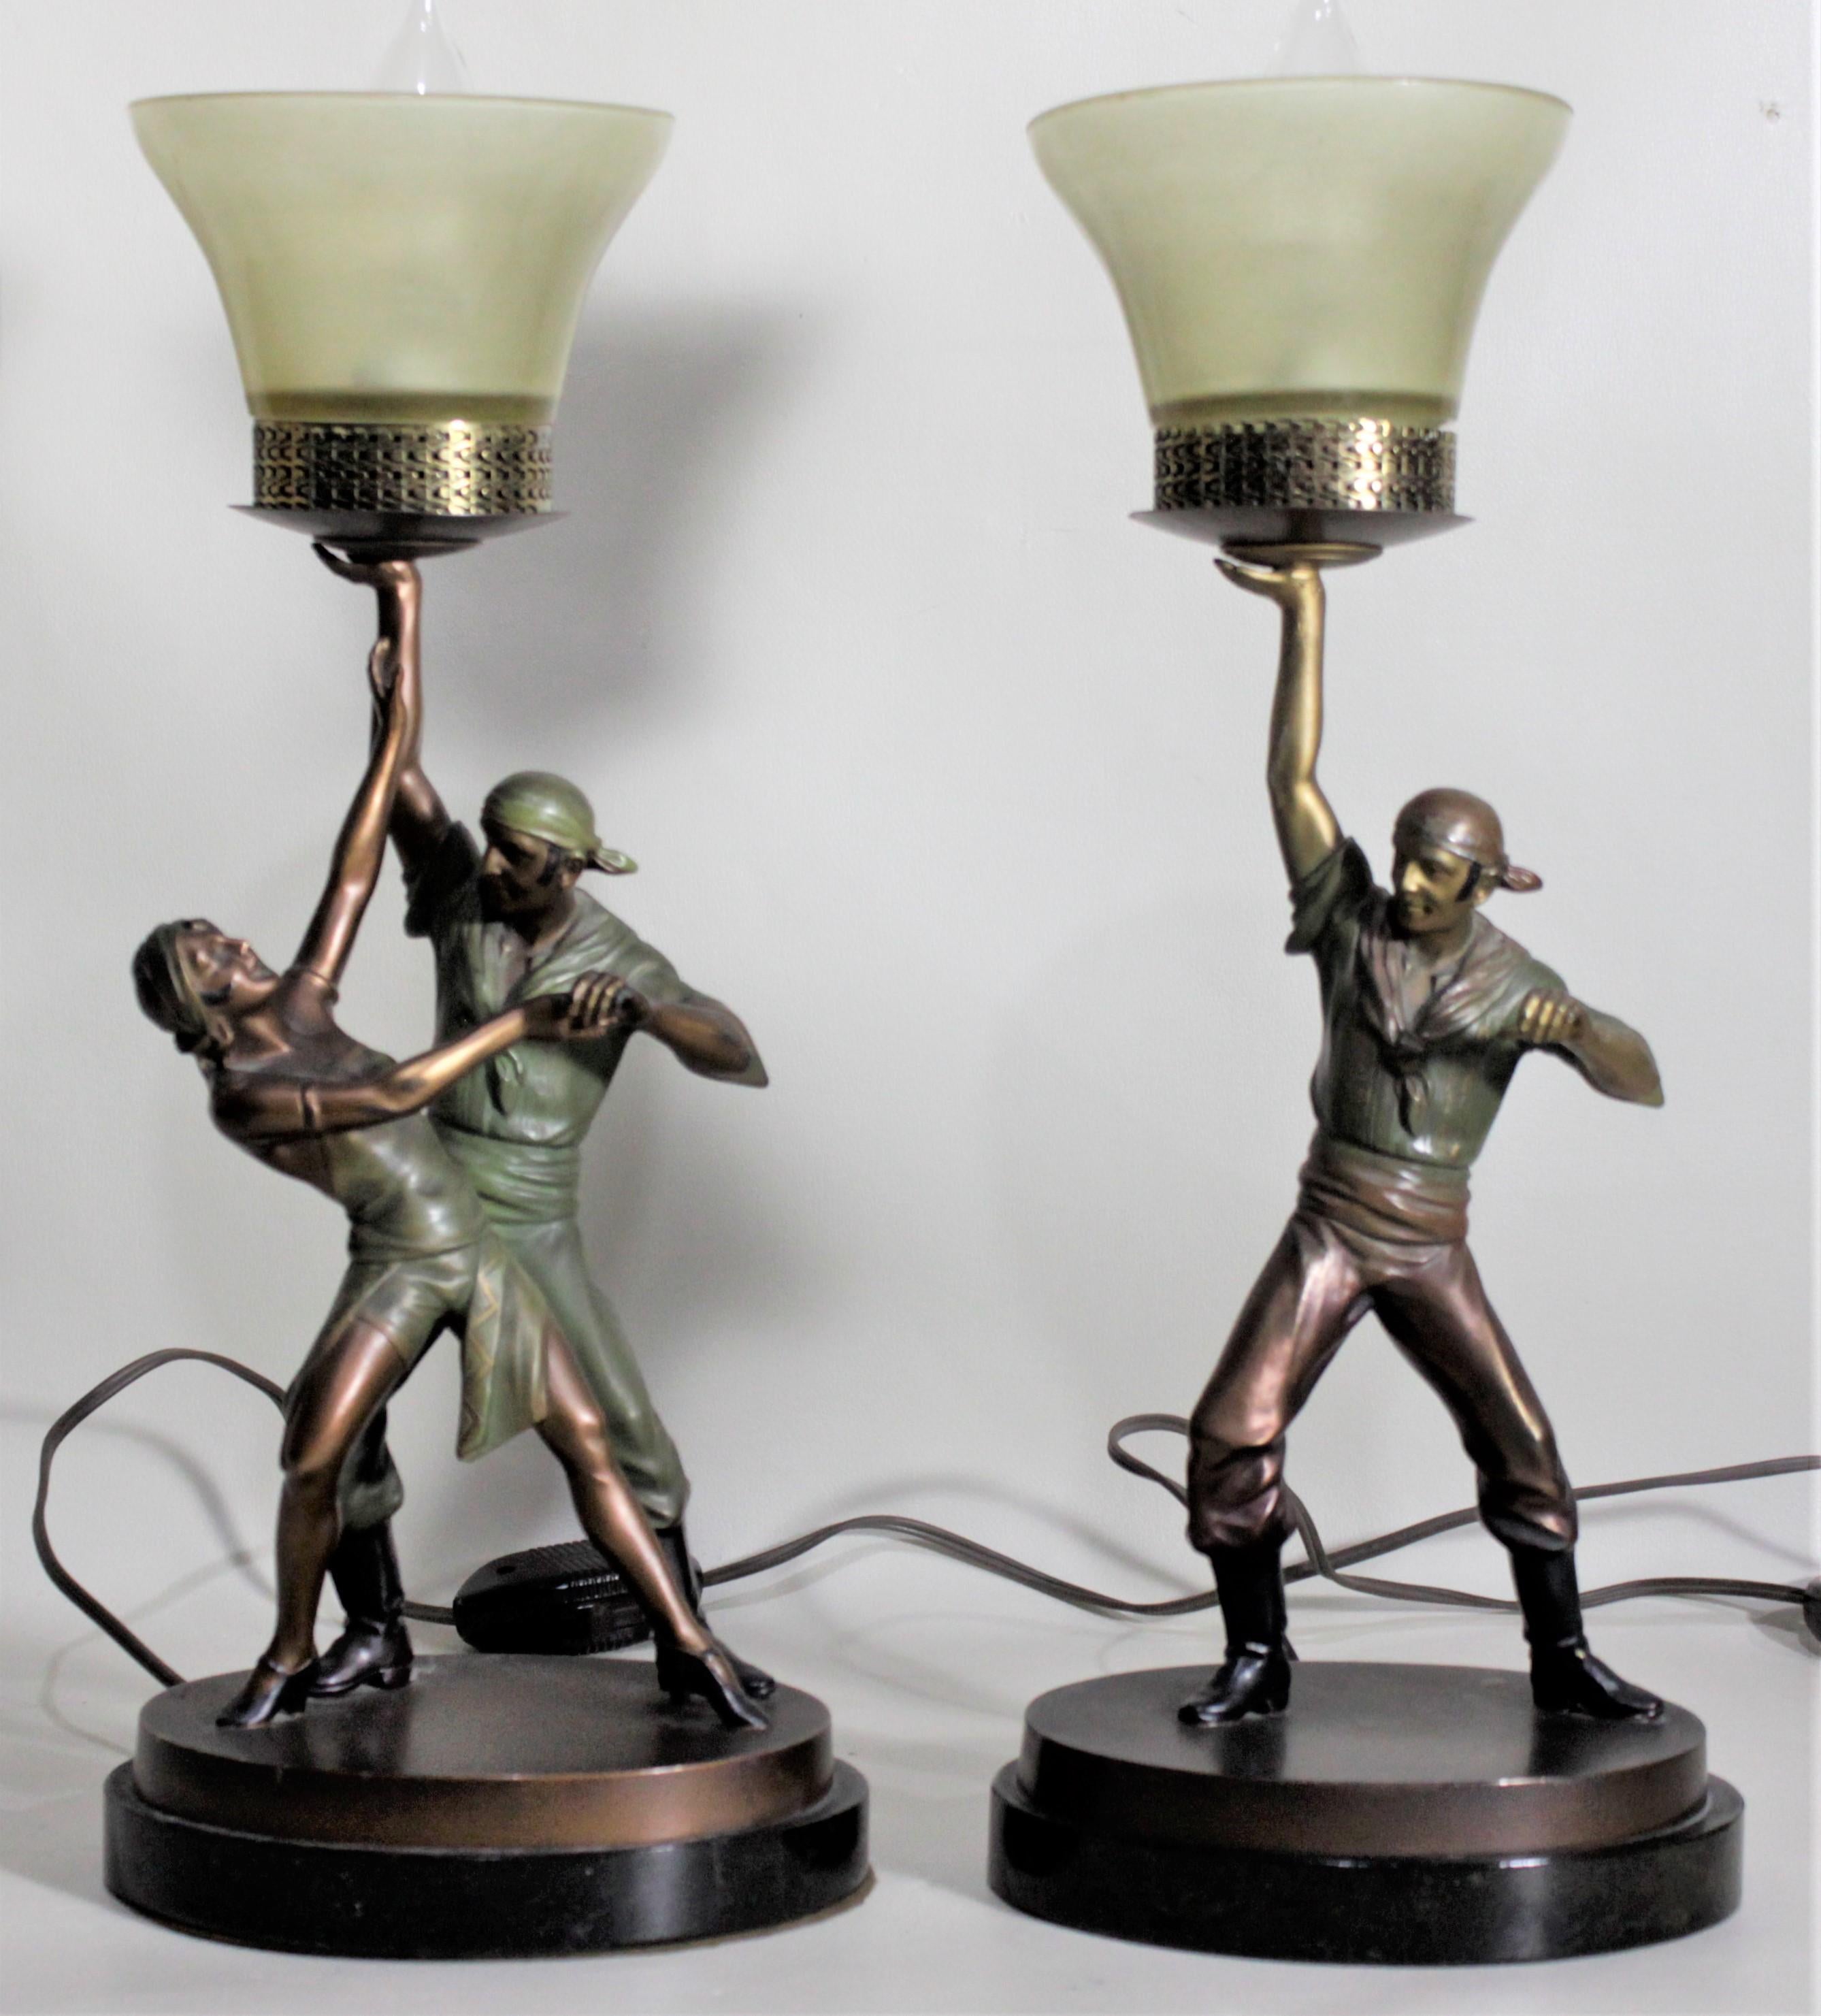 Dieses Paar Gusslampen aus Zinn ist unsigniert, wurde aber vermutlich um 1920 in Österreich im Stil des Art déco hergestellt. Jede Leuchte ist kunstvoll gegossen und kalt bemalt und zeigt figurale Piratenfiguren in einem bronzefarbenen Finish mit